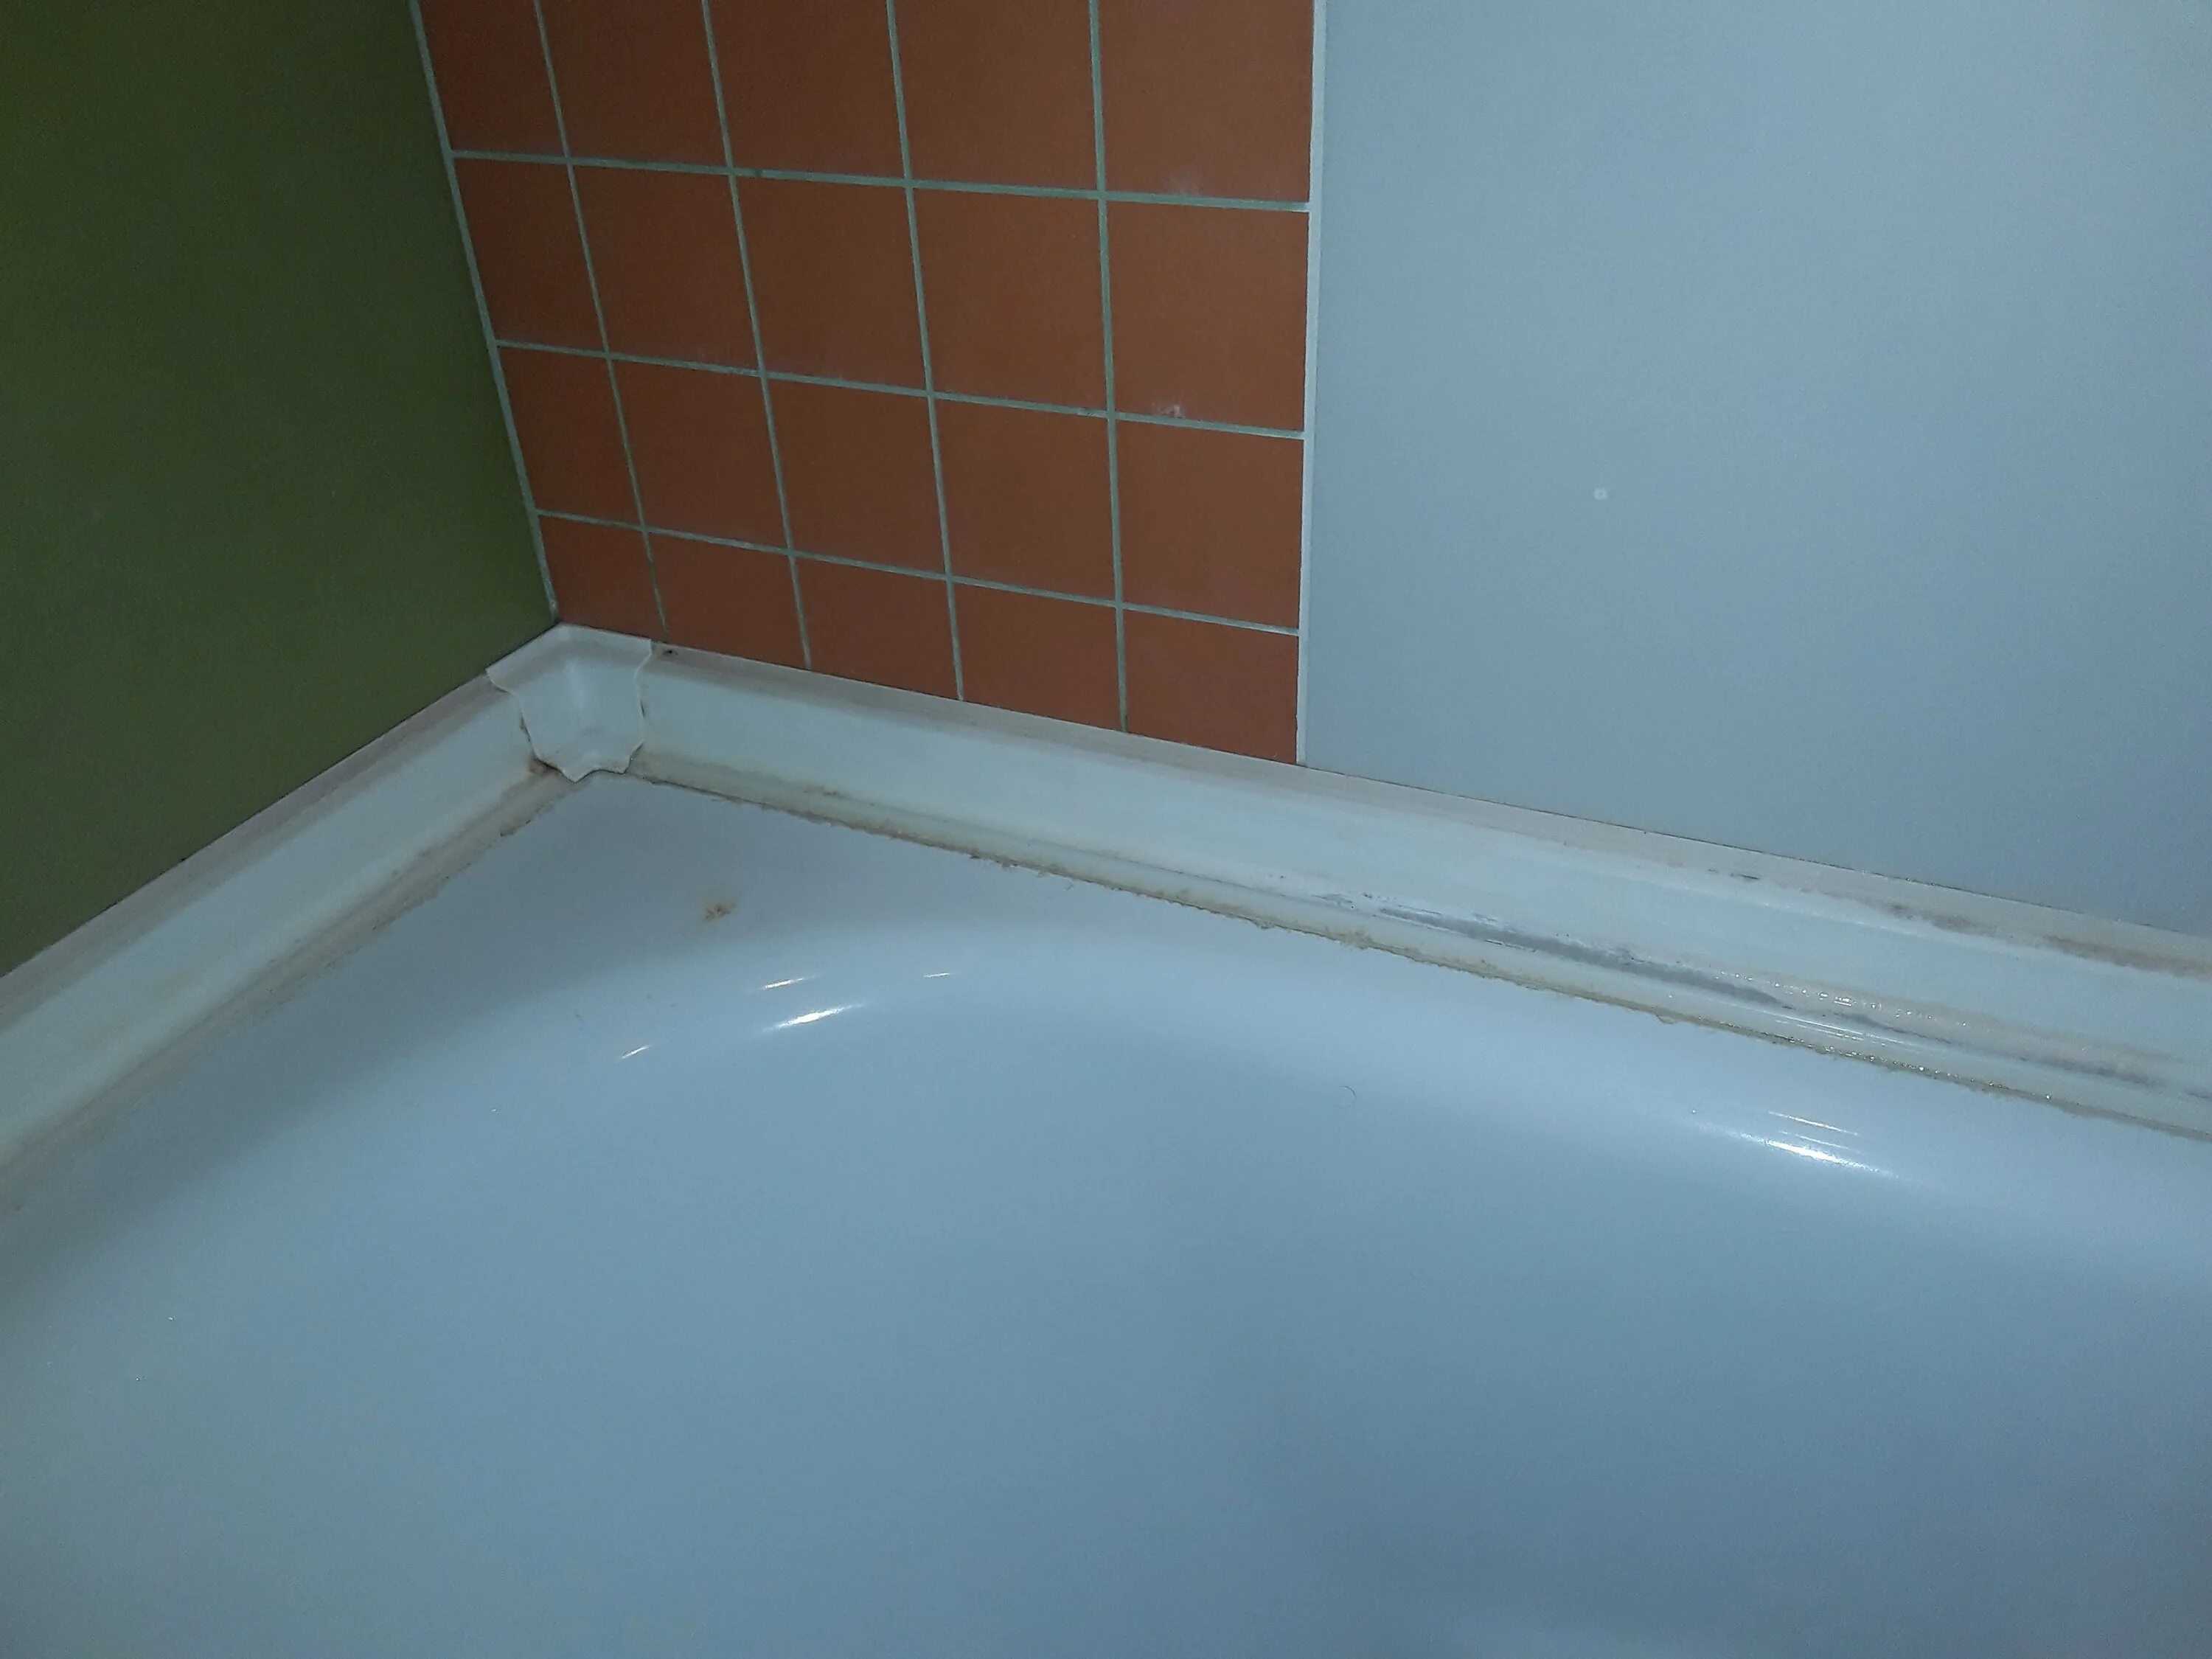 Галтель для ванны заделать щель 80 мм. Керамический плинтус для ванной. Шов между ванной и стенко. Отделка края ванны. Стык плитки и стены